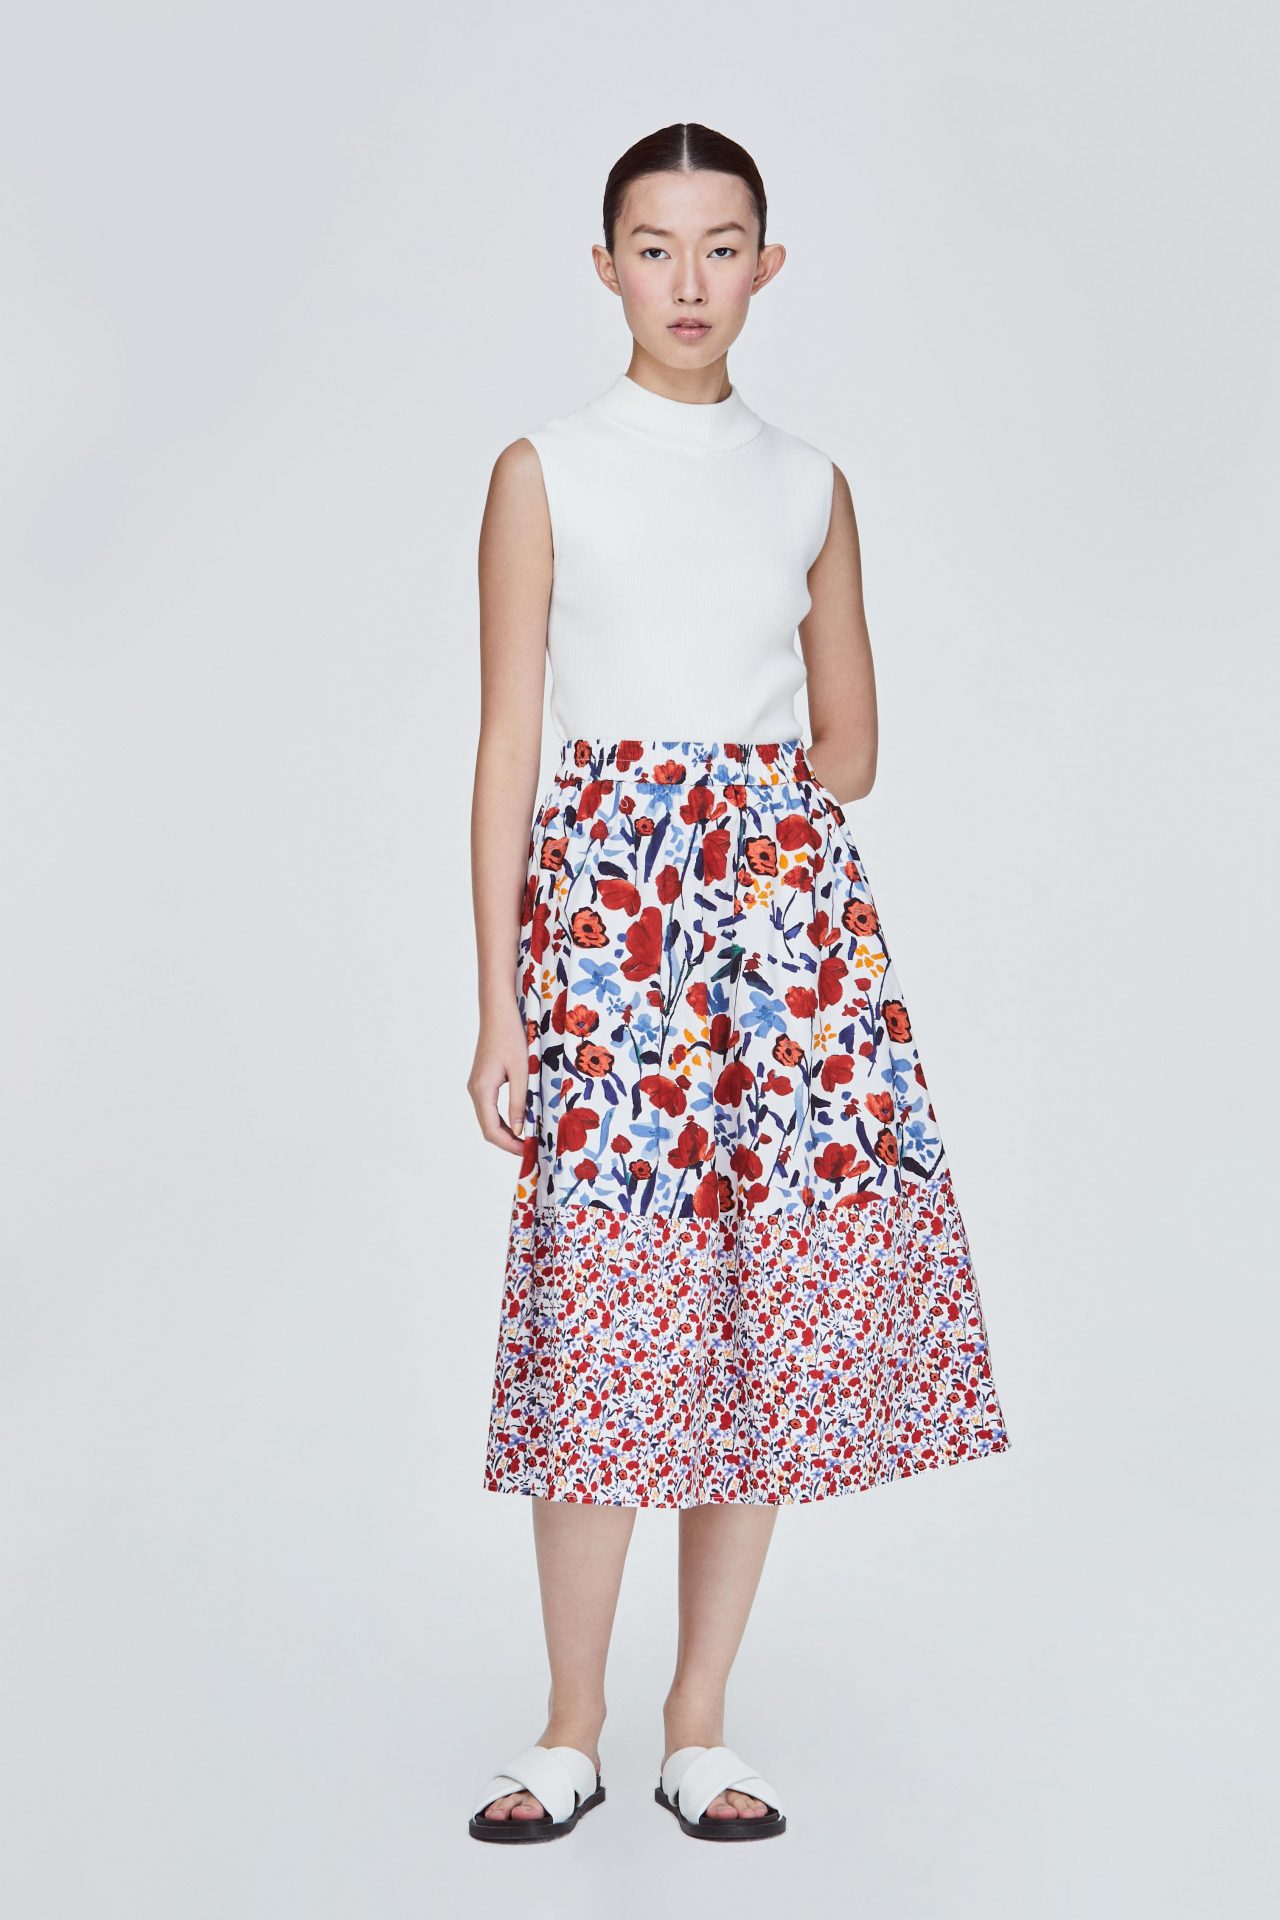 Contrast Print A-Line Skirt - iORA SINGAPORE